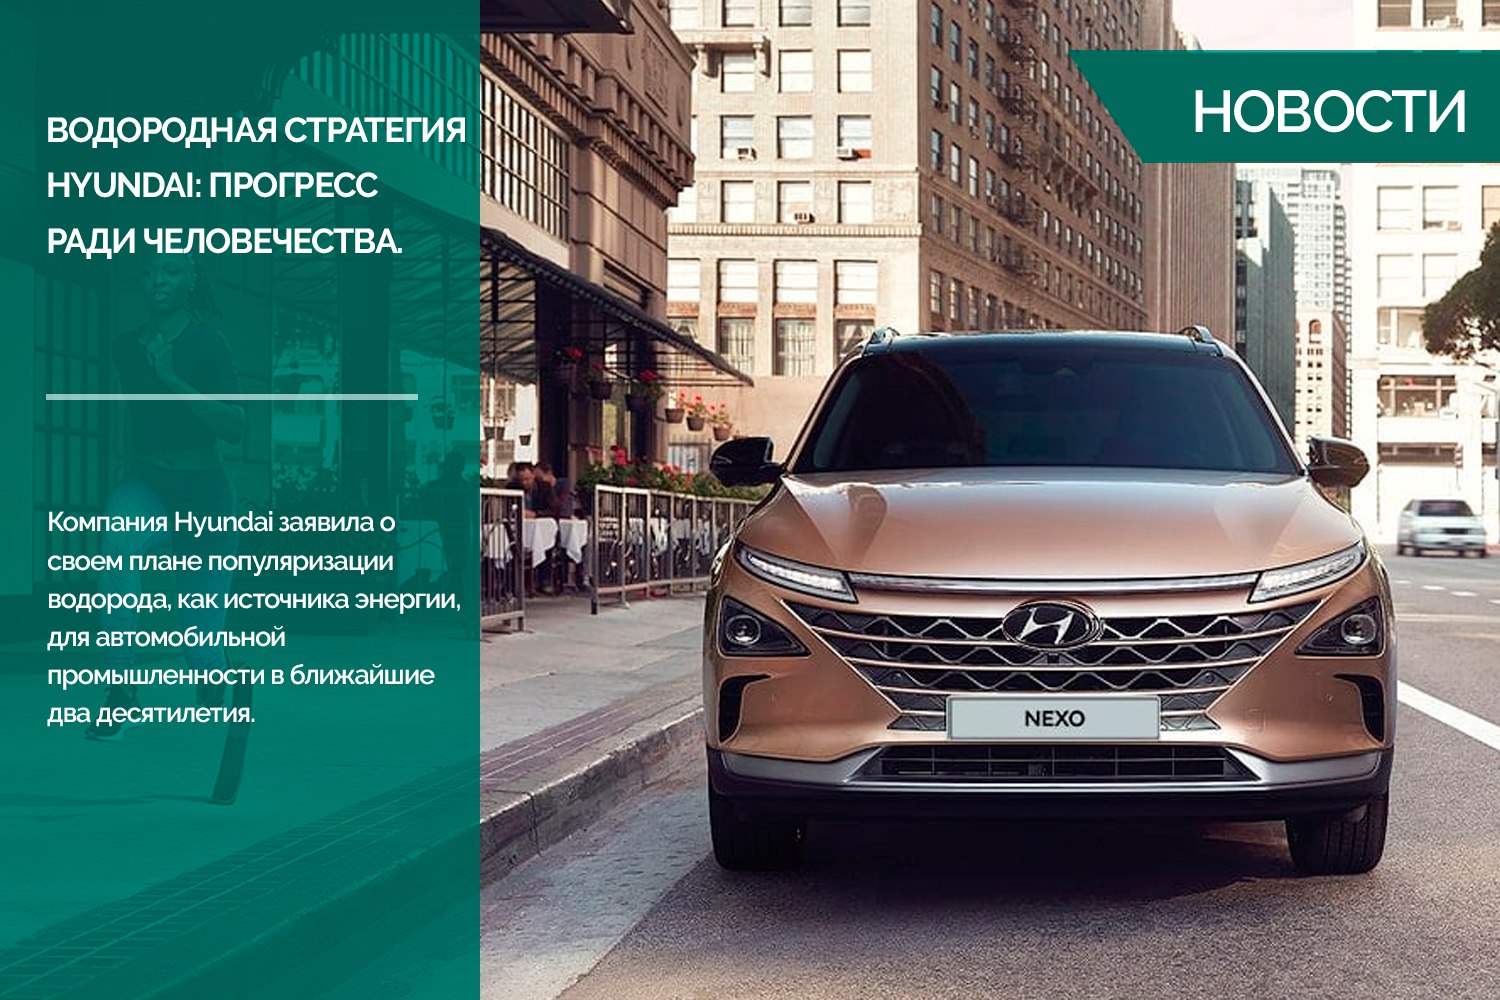 Водородная стратегия Hyundai – серийный Nexo, 680-сильный спорткар и автономные авто